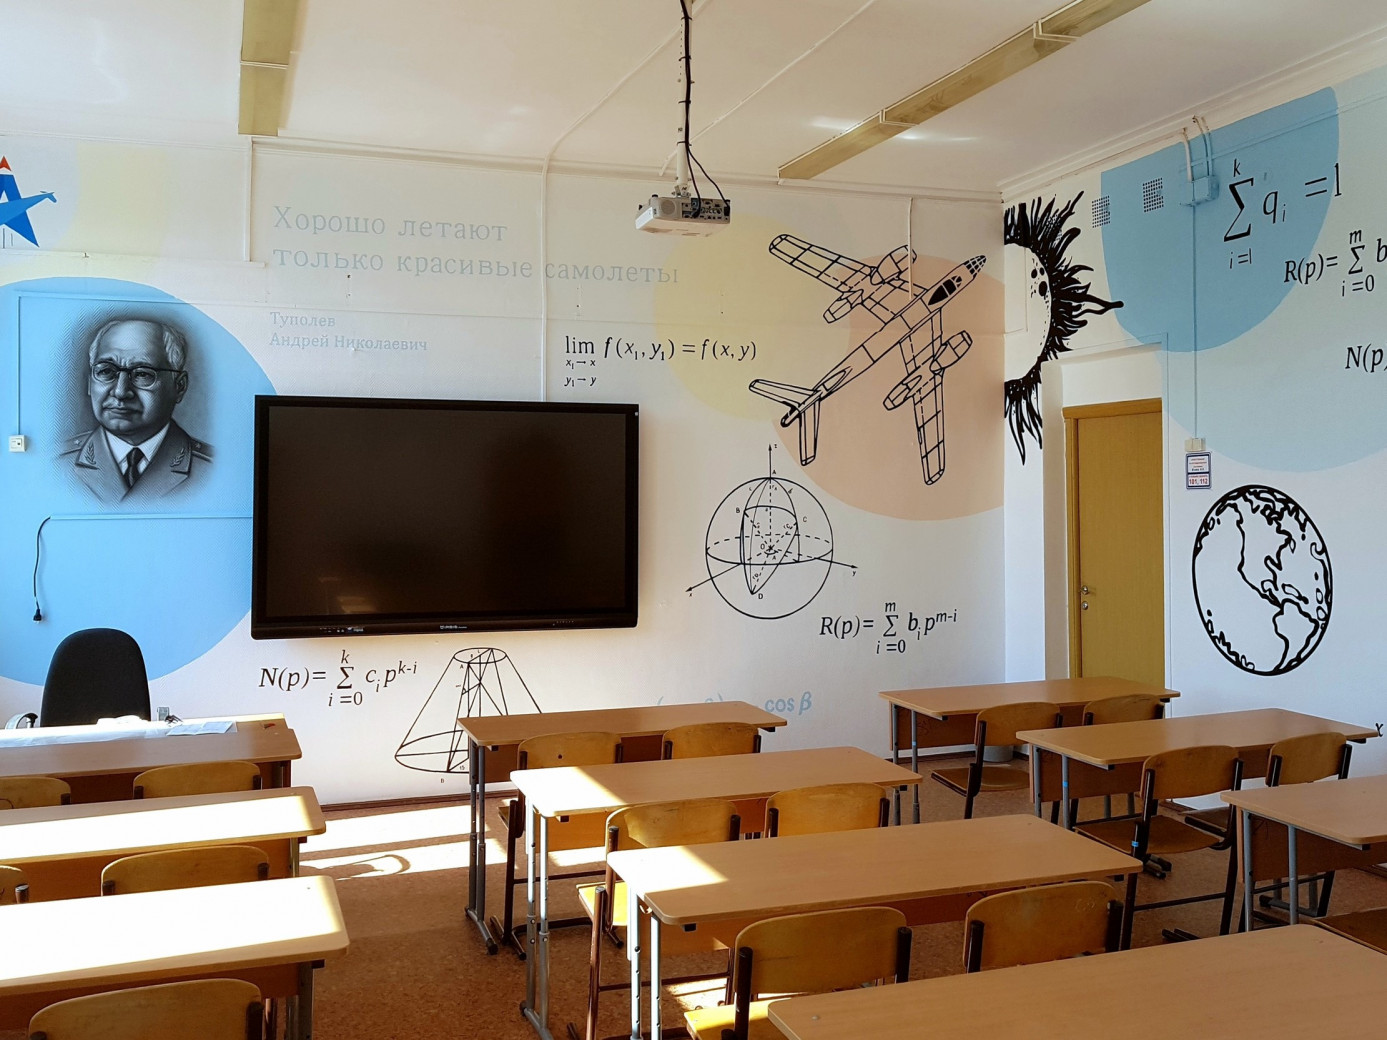 Художественная роспись стен в школе, дизайн идеи оформления интерьера  рисунками, фото, заказать в Москве